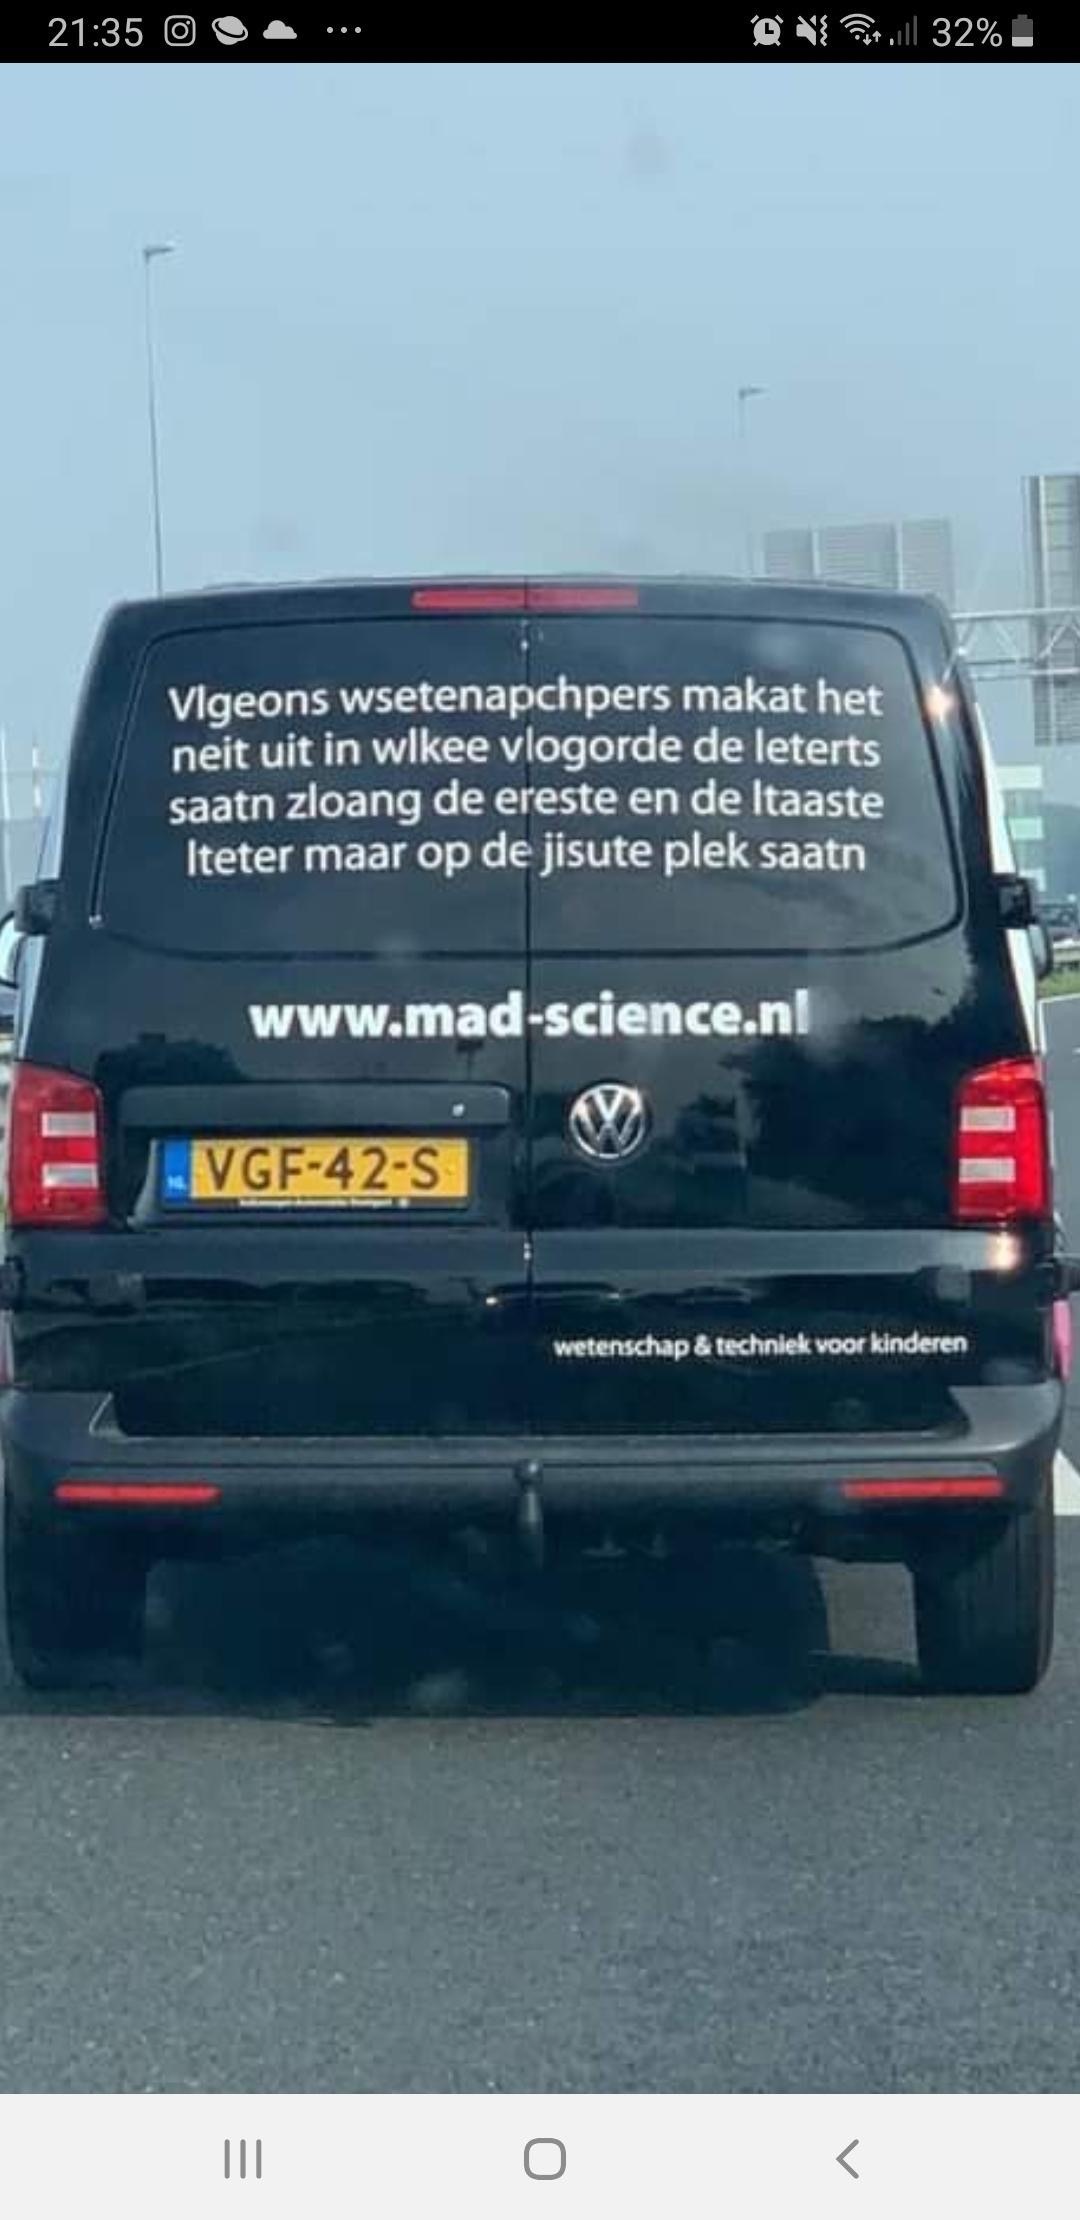 Woordbeeld (mad-science.nl)